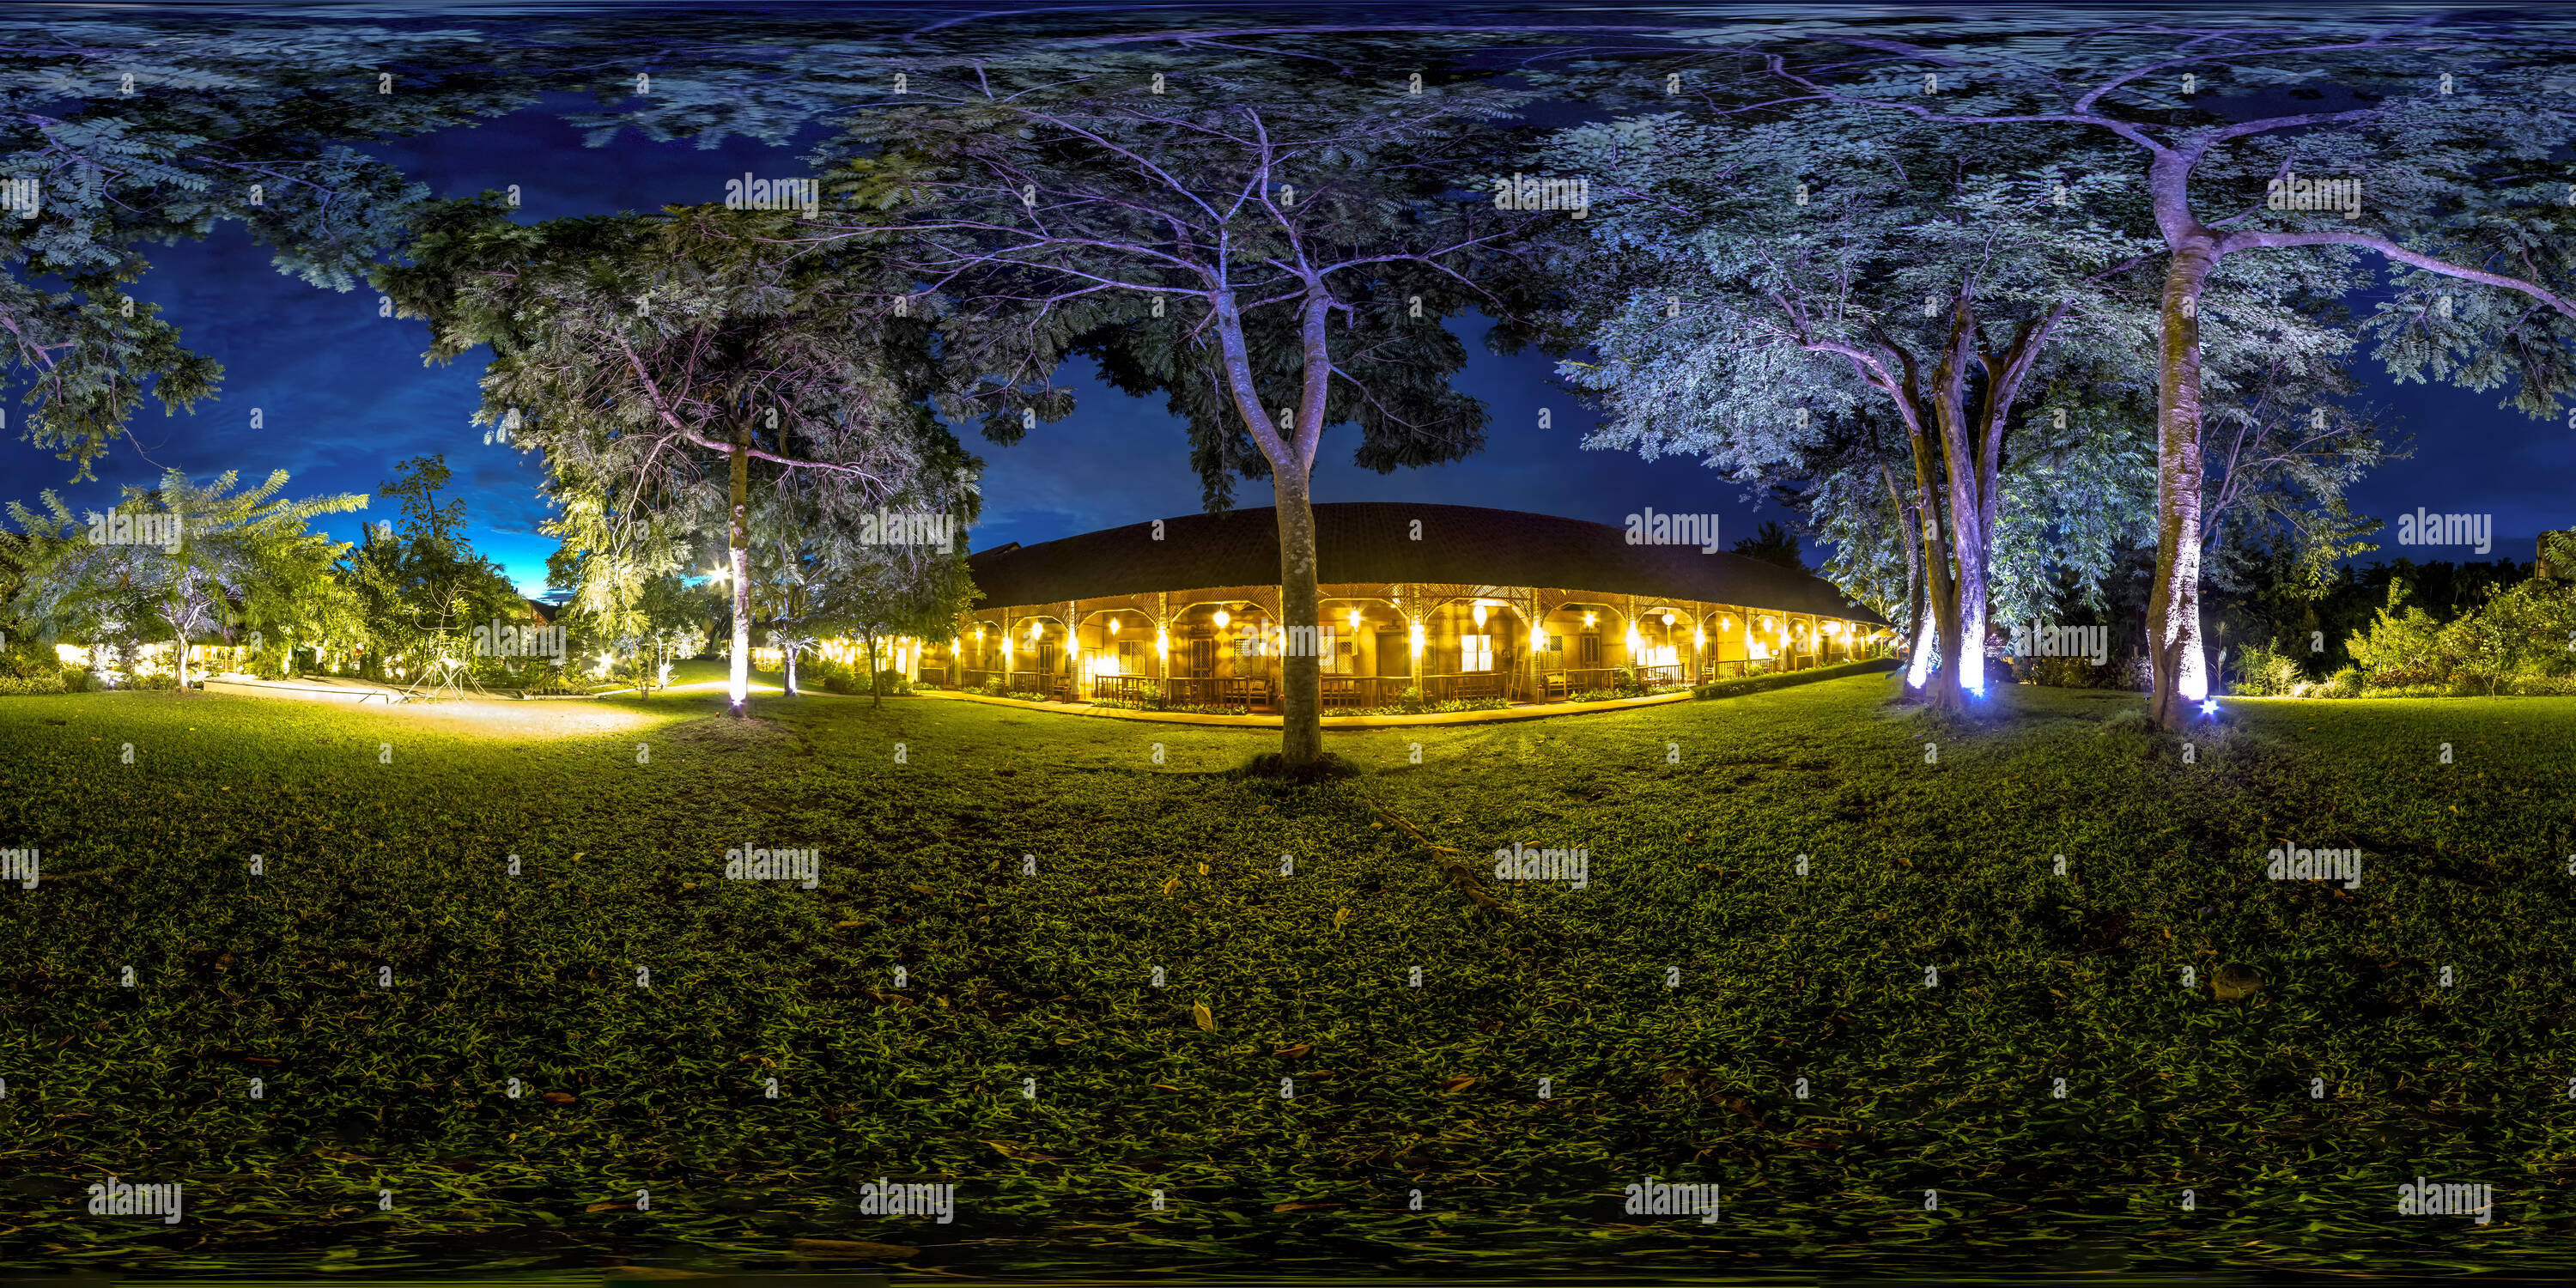 Vue panoramique à 360° de Villa Escudero Cottages traditionnels philippins